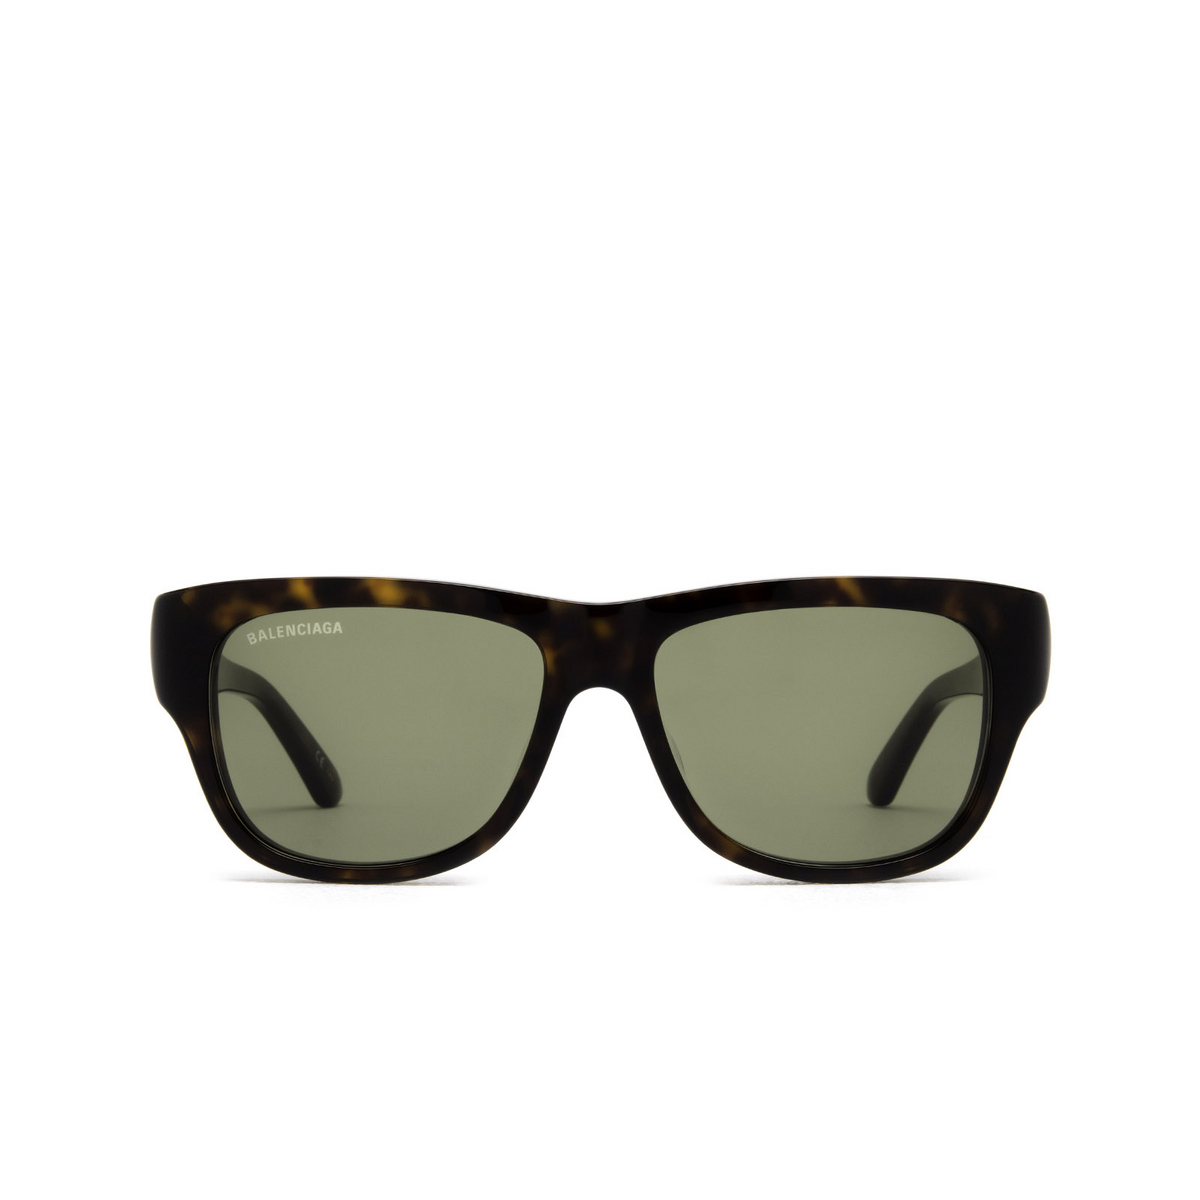 Balenciaga® Square Sunglasses: BB0211S color Havana 002 - front view.